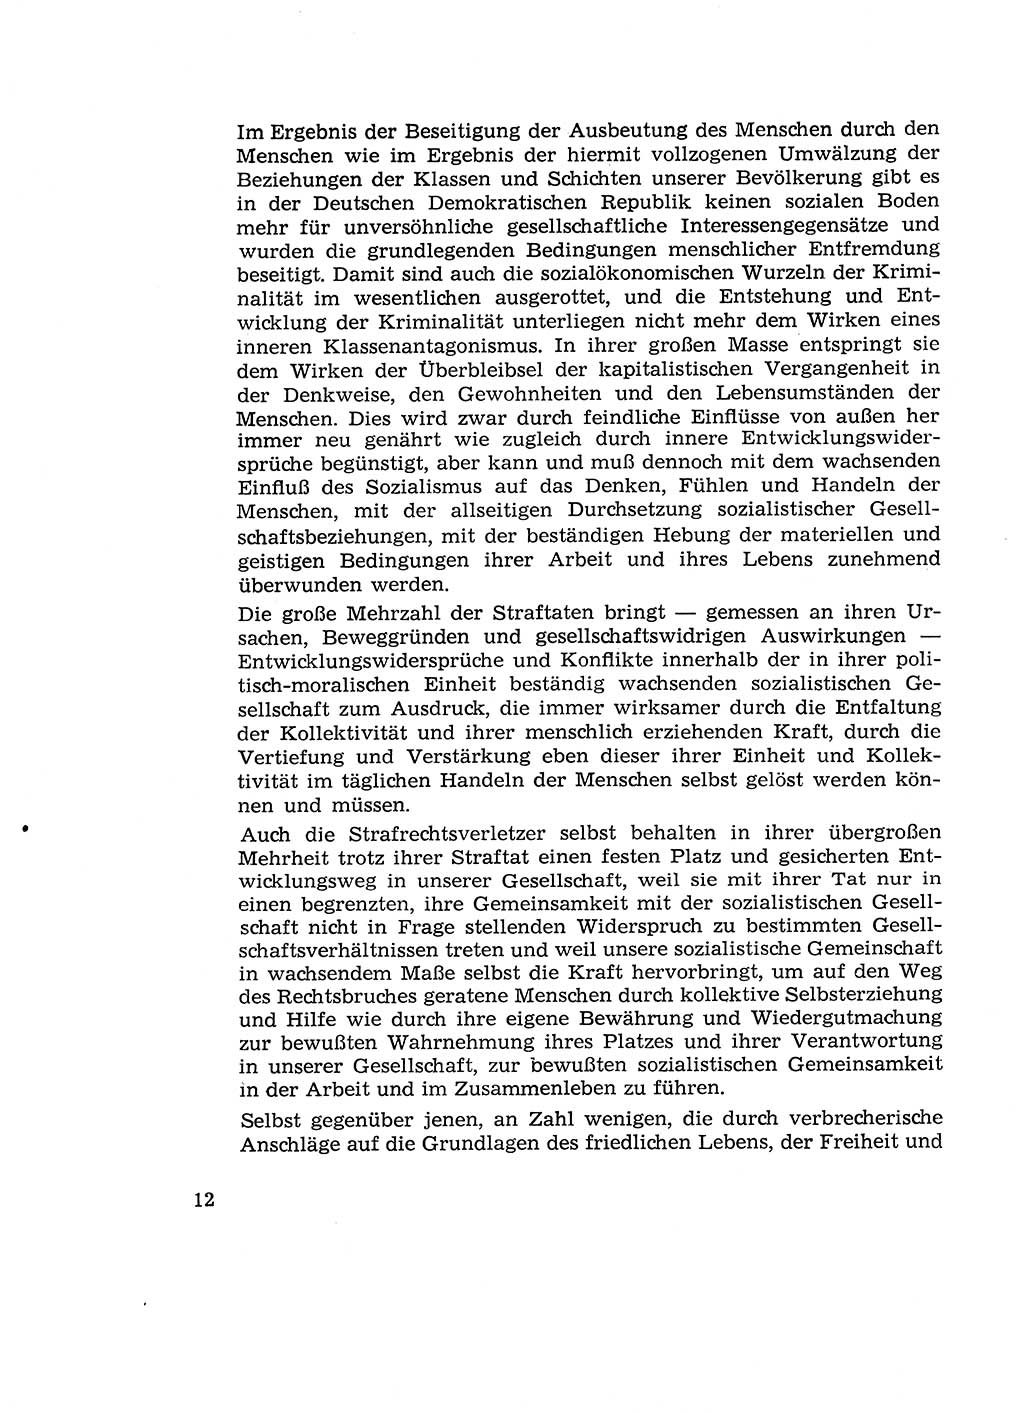 Verantwortung und Schuld im neuen Strafgesetzbuch (StGB) [Deutsche Demokratische Republik (DDR)] 1964, Seite 12 (Verantw. Sch. StGB DDR 1964, S. 12)